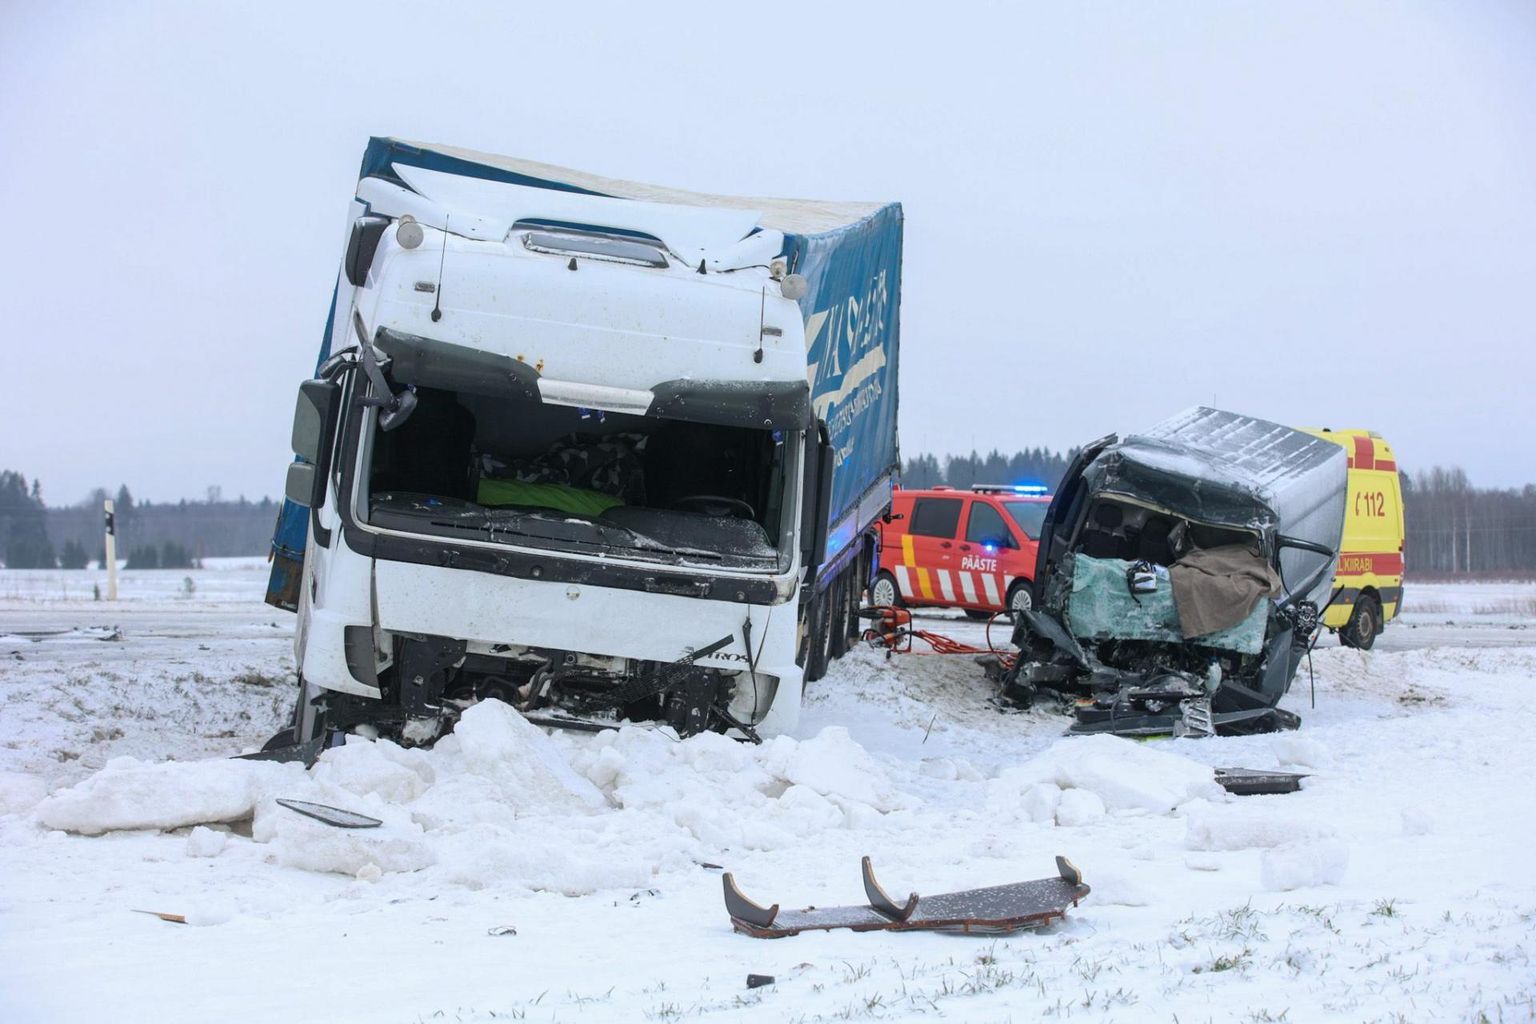 Traagilises liiklusõnnetuses 27. detsembril 2022 hukkus Läti kodanikust kaubikujuht, kes oli ise õnnetuse põhjustanud.